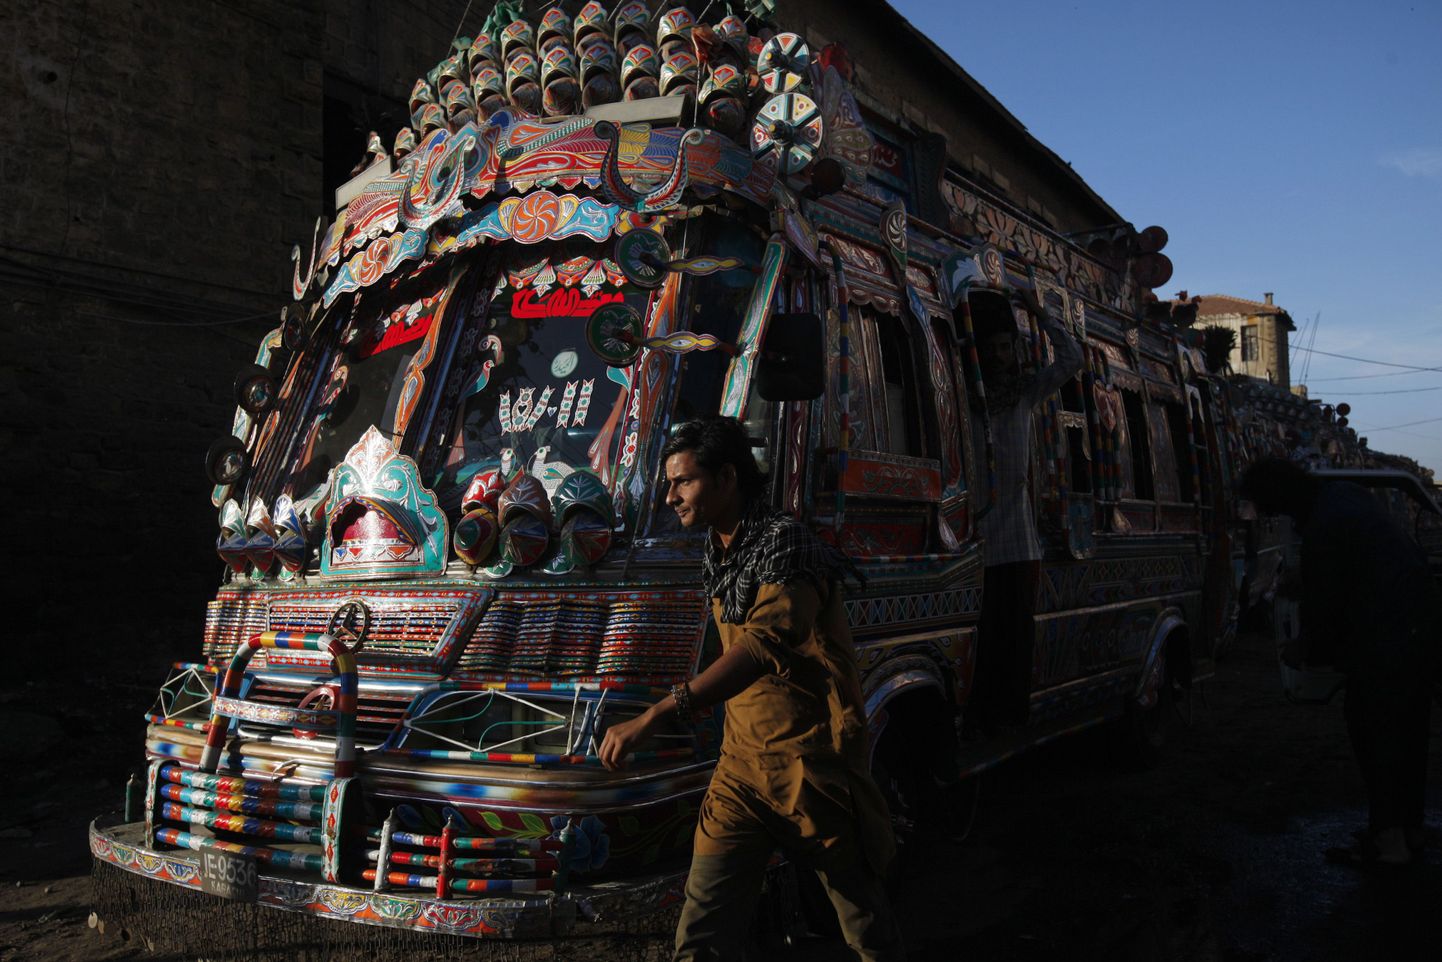 Kaunistatud buss Karachis. Ühte tavalisse bussi mahutatakse suure asustustihedusega linnas tavaliselt väga palju inimesi.